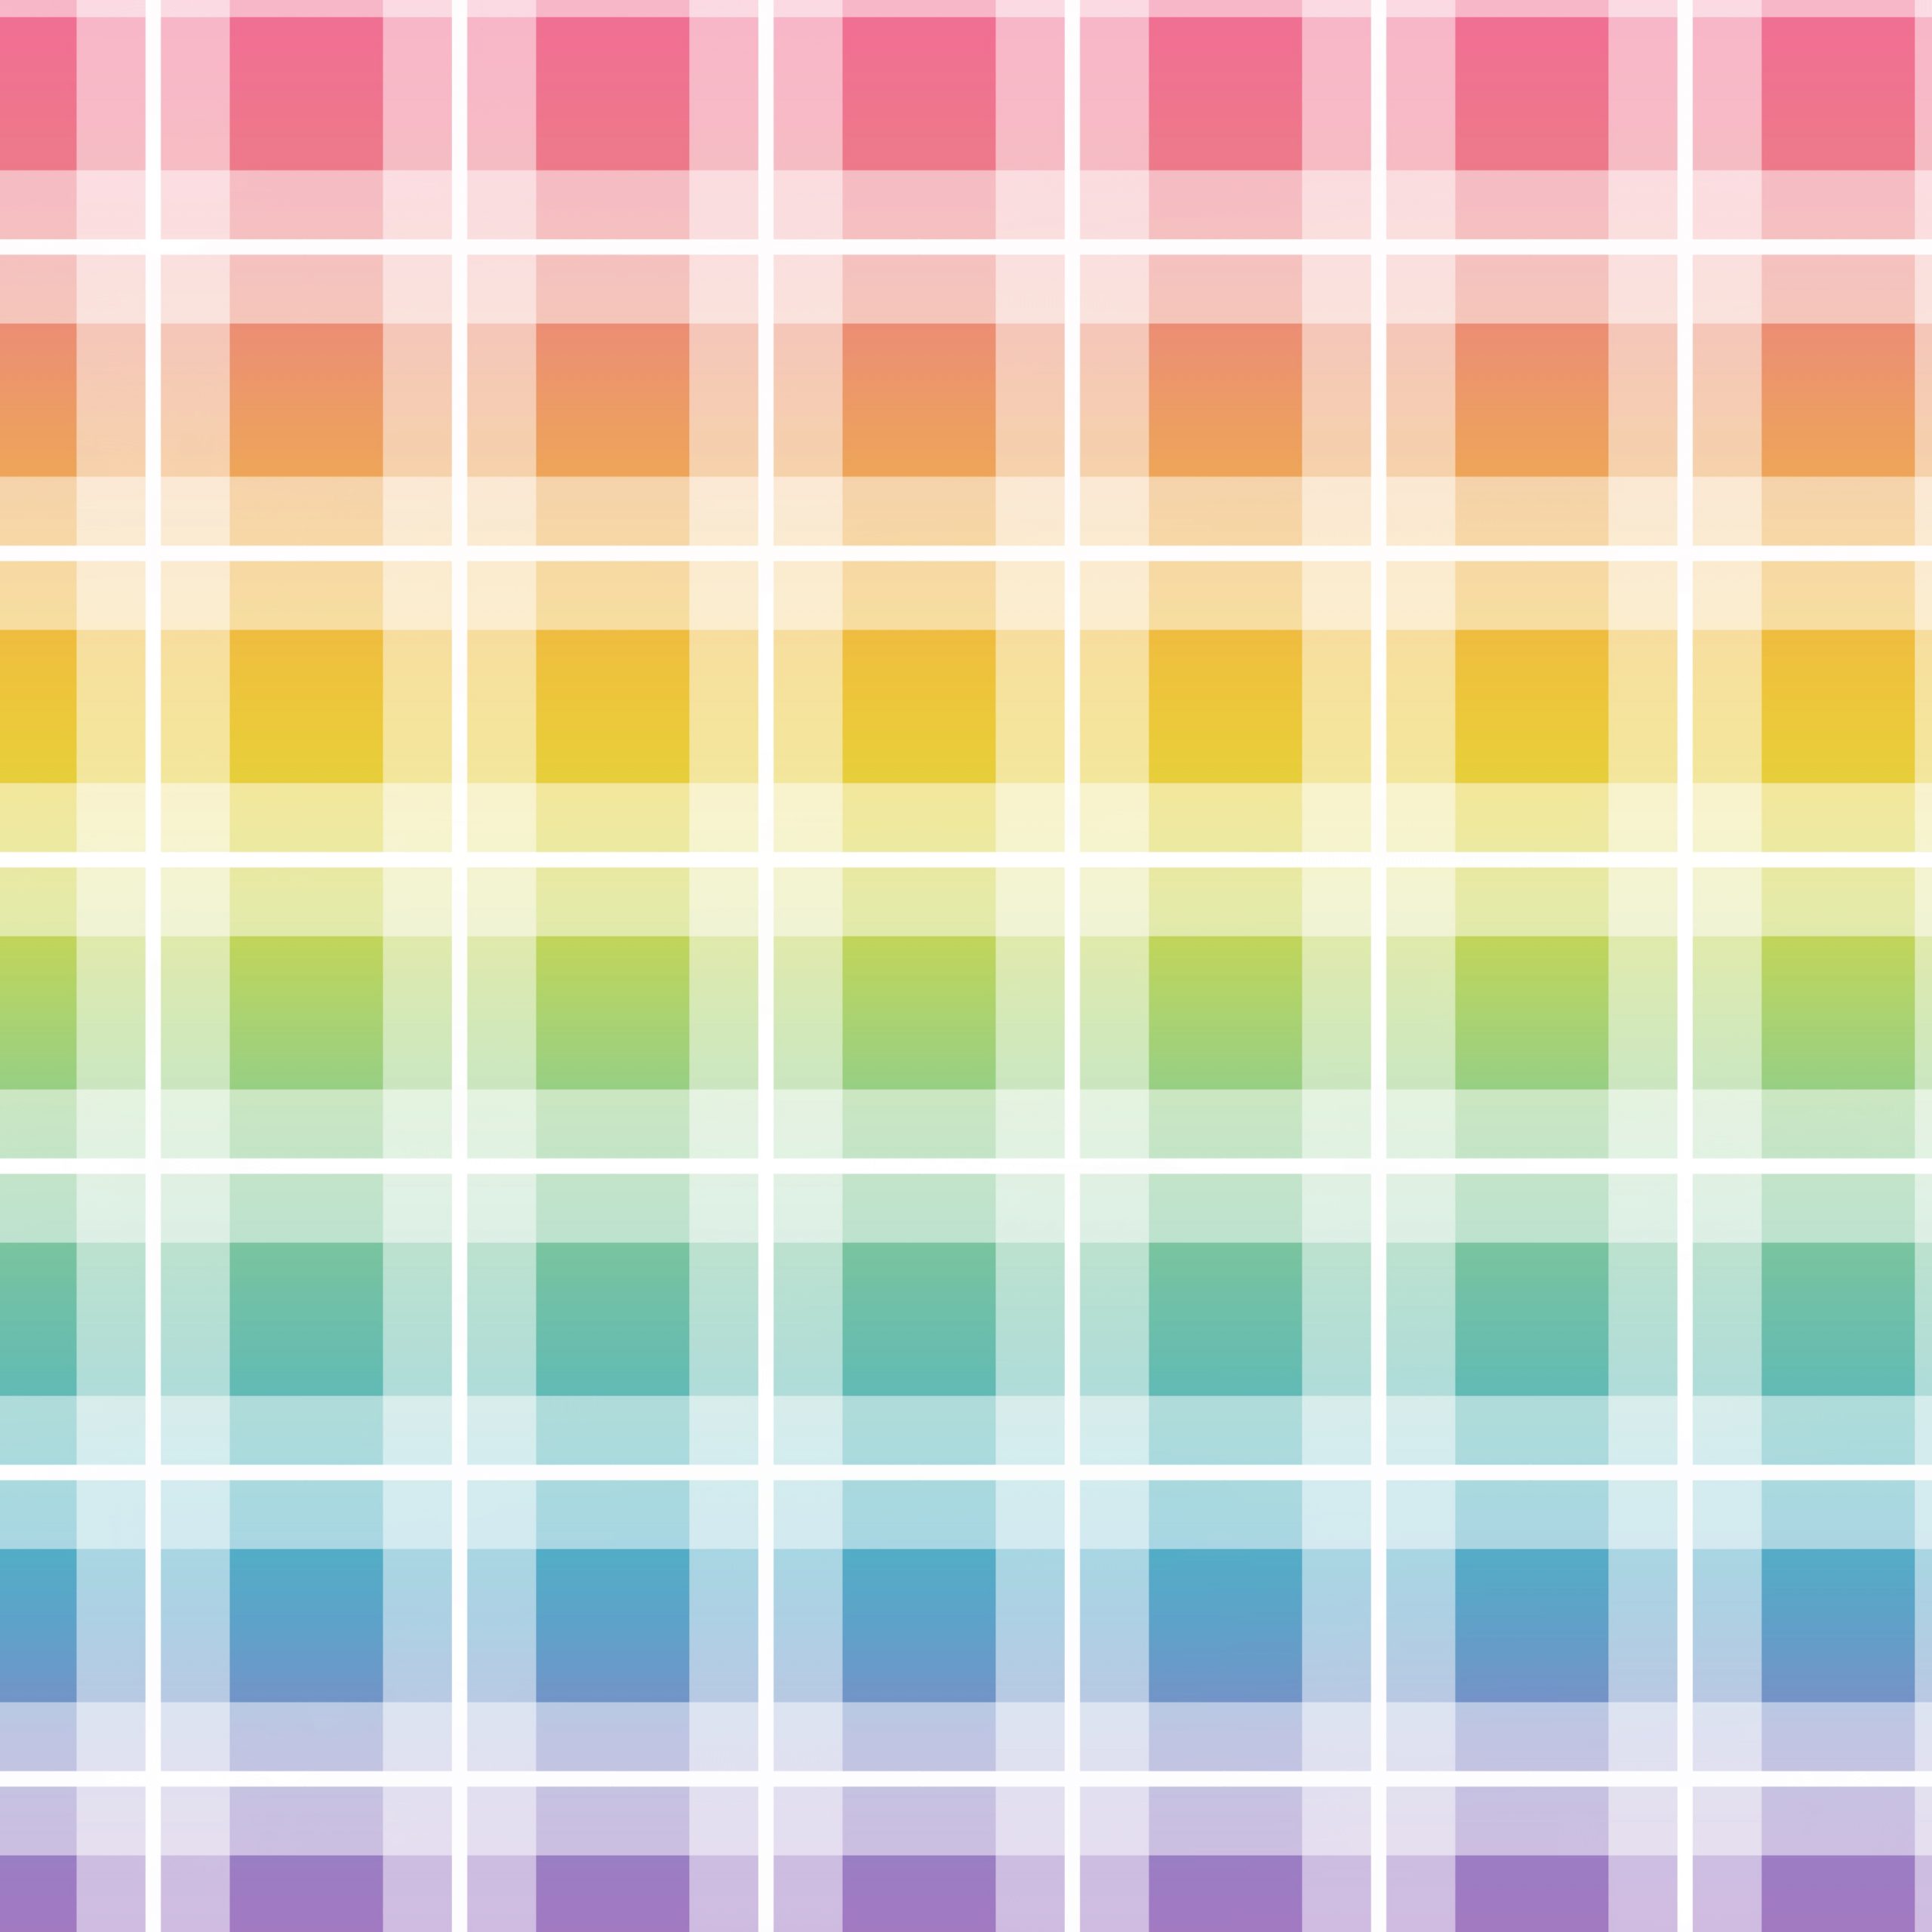 Papel para scrapbooking digital de cuadros de colores arcoiris estilo tartán grandes